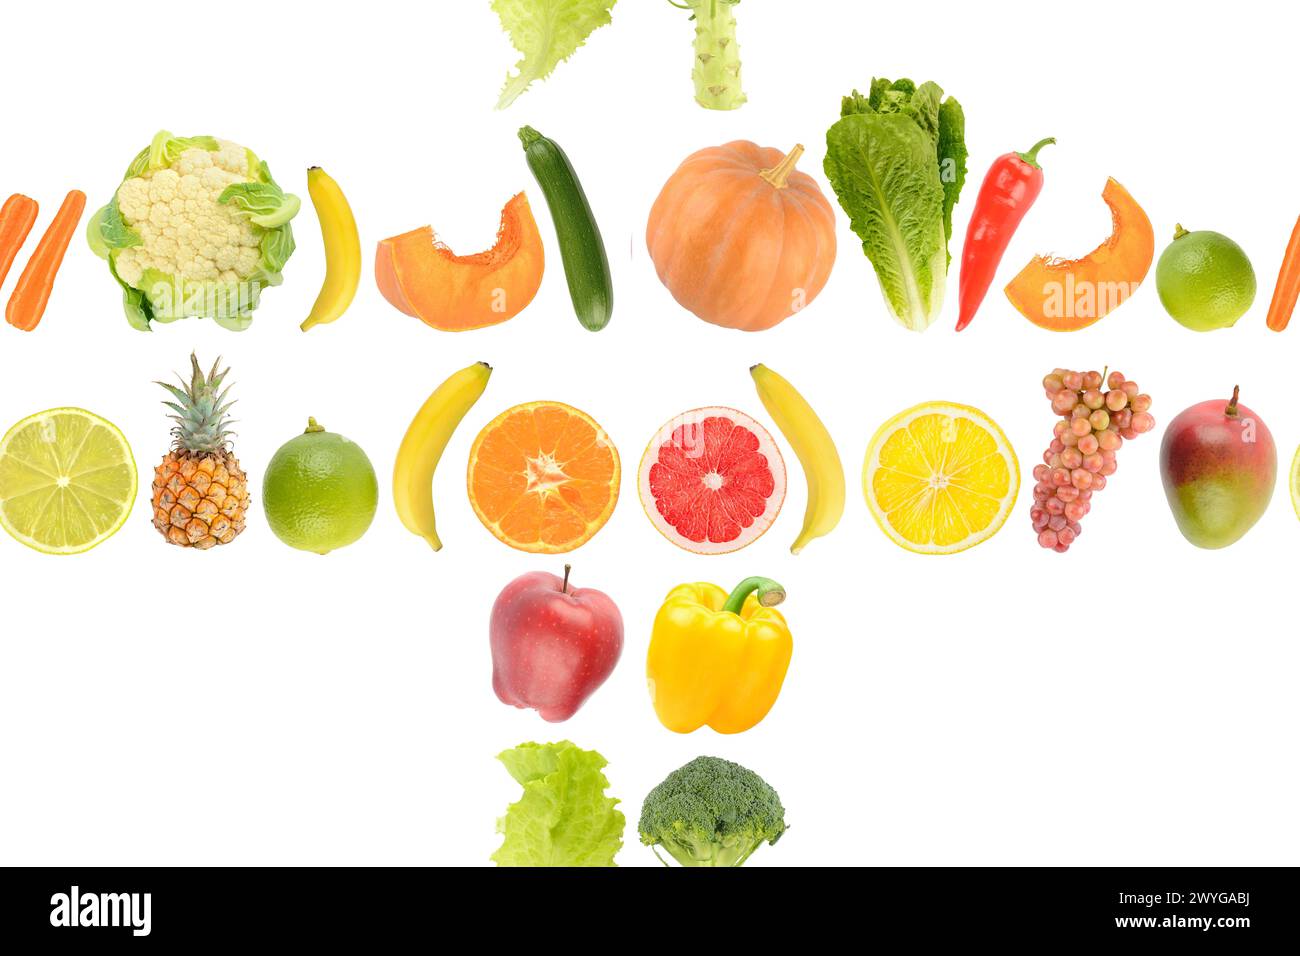 Modèle sans couture de légumes frais juteux et de fruits utiles pour la santé isolé sur fond blanc. Banque D'Images